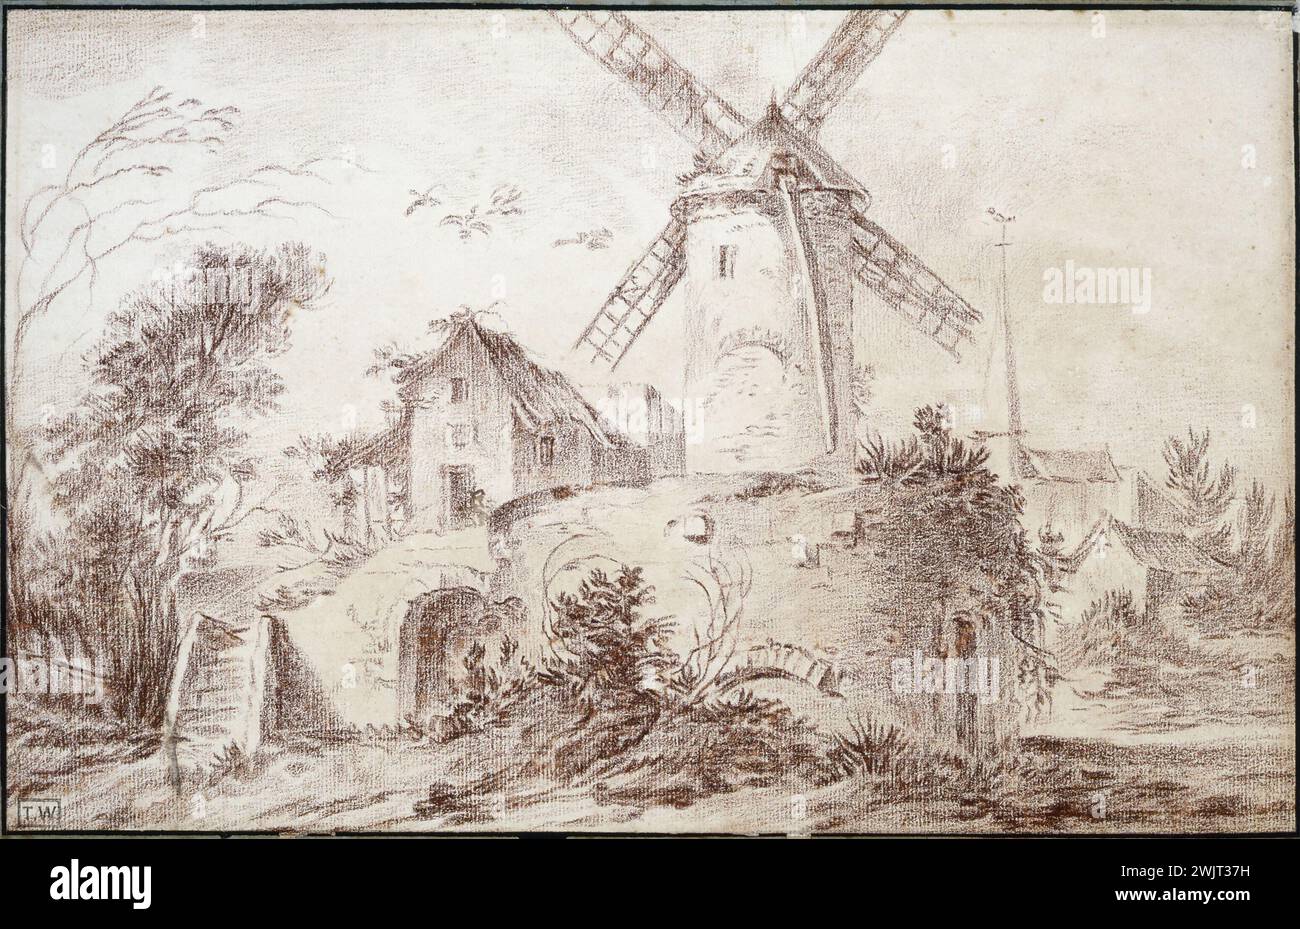 Jean-Baptiste-Marie Pierre (1714-1789). "Il mulino a vento vicino al villaggio", intorno al 1754. Sanguina sulla carta. Parigi, museo Cognacq-Jay. 25930-11 disegno, mulino a vento, sangue su carta, villaggio Foto Stock